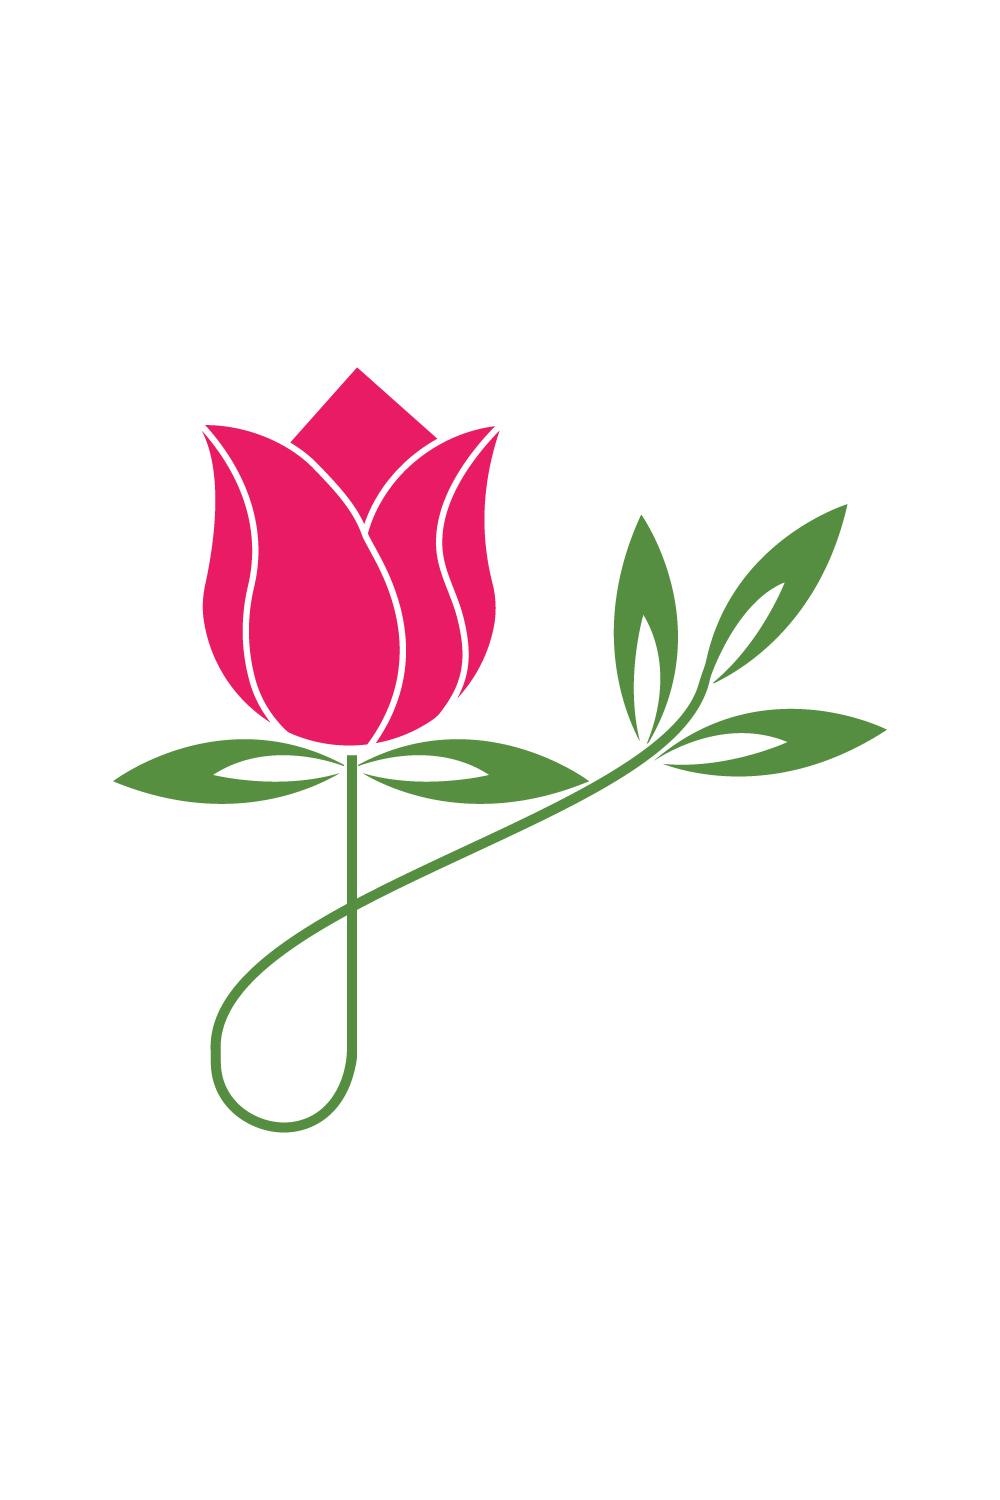 Beauty Rose flower logo design vector icon Flower logo vector template illustration pinterest preview image.